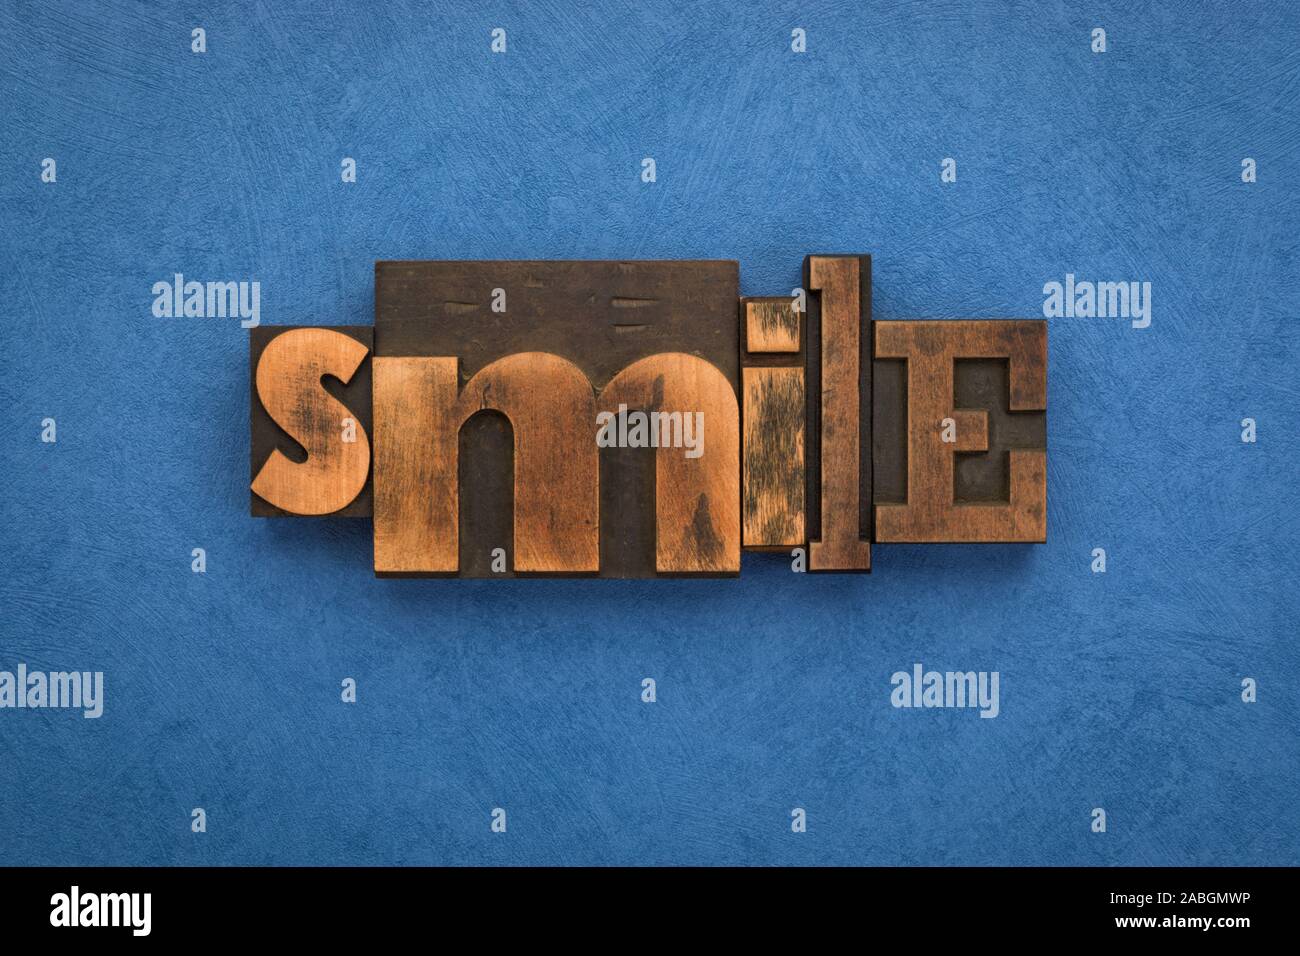 Sourire, seul mot écrit avec la typographie vintage blocks sur fond bleu texturé. Banque D'Images